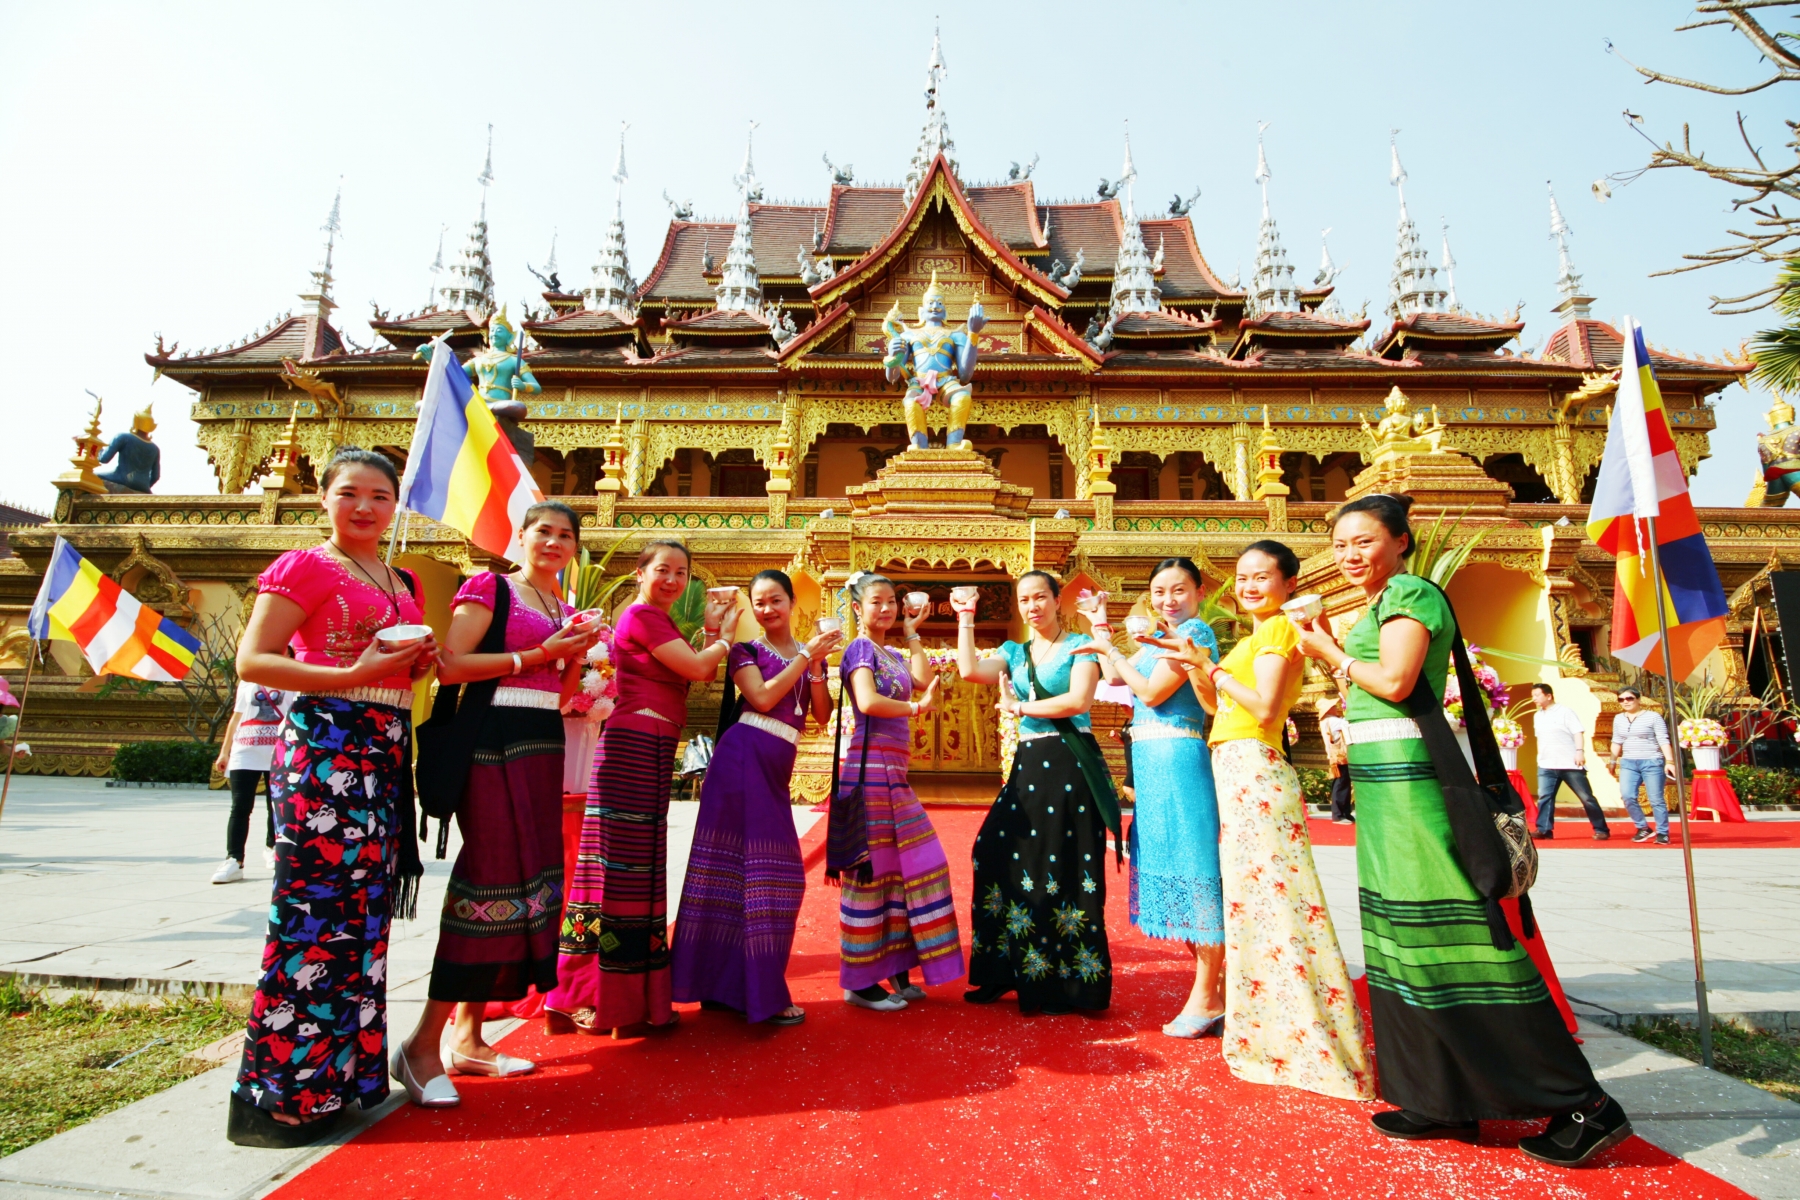 Trang phục của phụ nữ dân tộc Thái với nhiều màu sắc rực rỡ